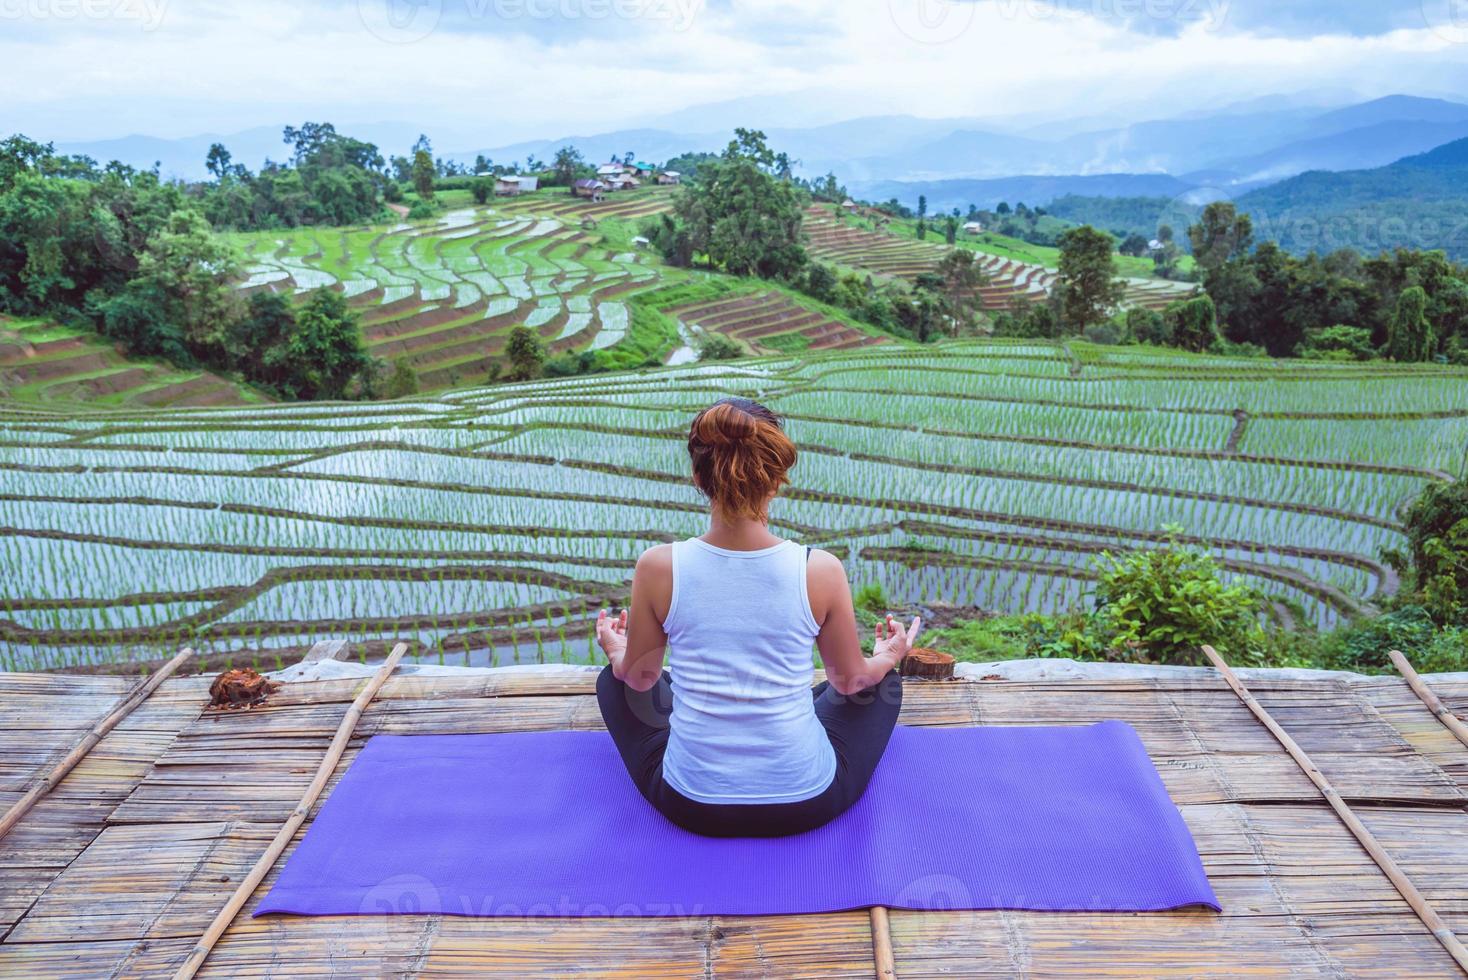 asiatische frau entspannen sich im urlaub. spielen, wenn Yoga. auf der balkonlandschaft naturfeld foto